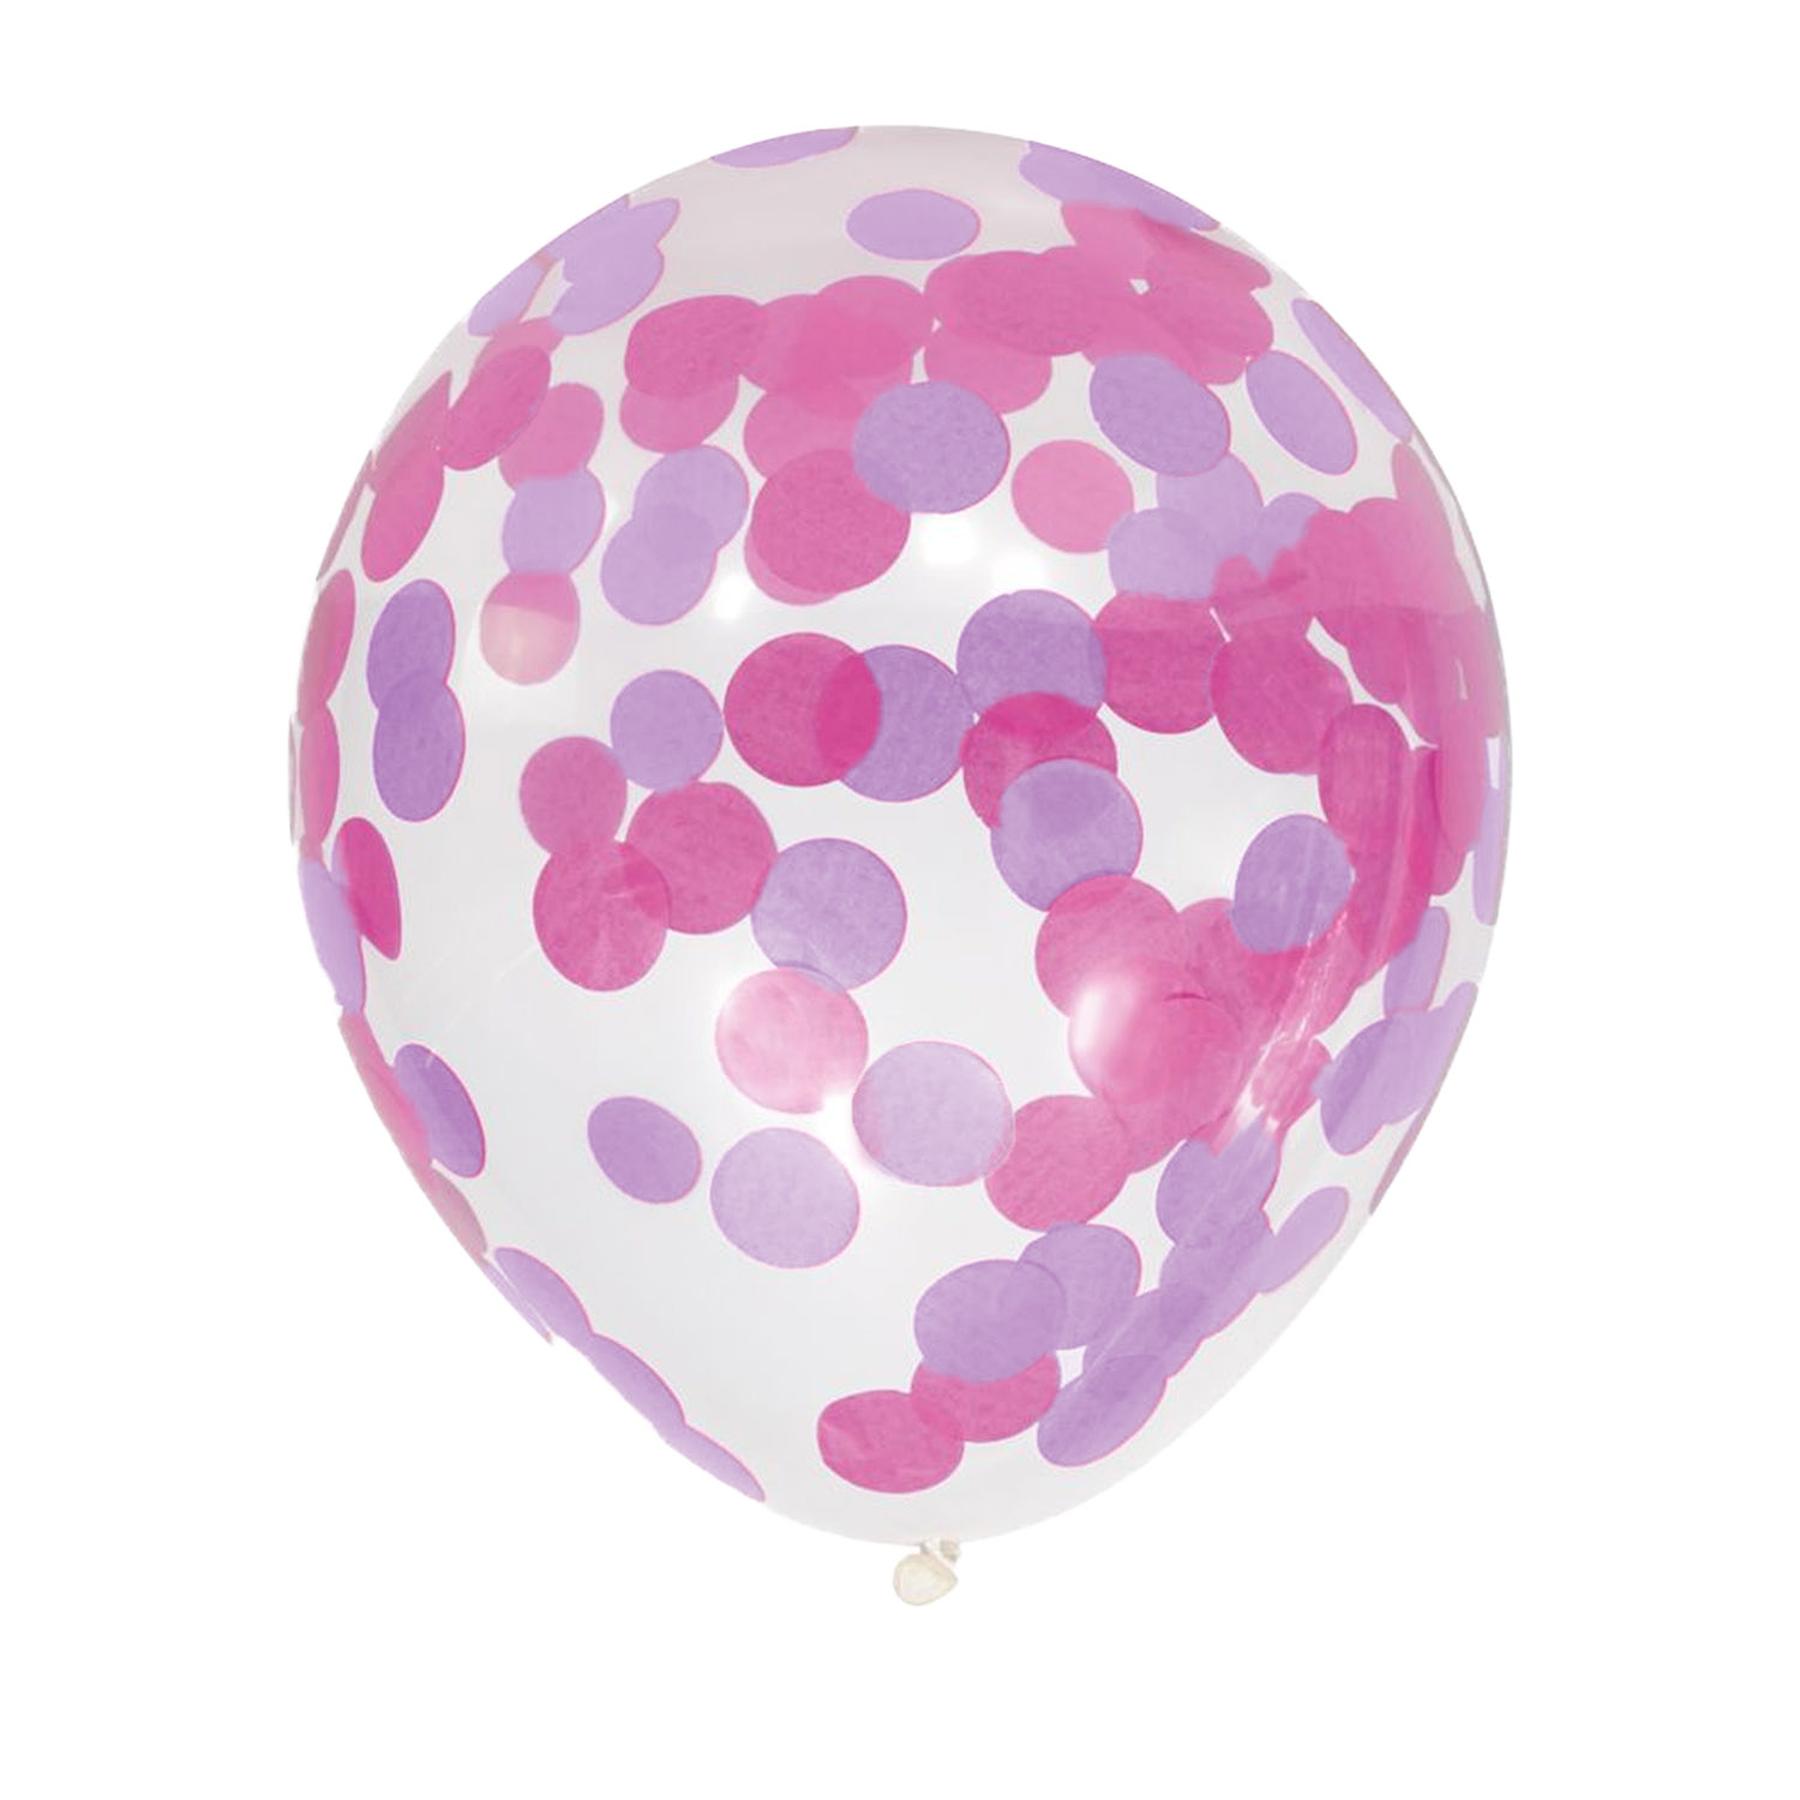 5x Folienballon - Konfetti/12inch - Lila/Pink (5er Set)